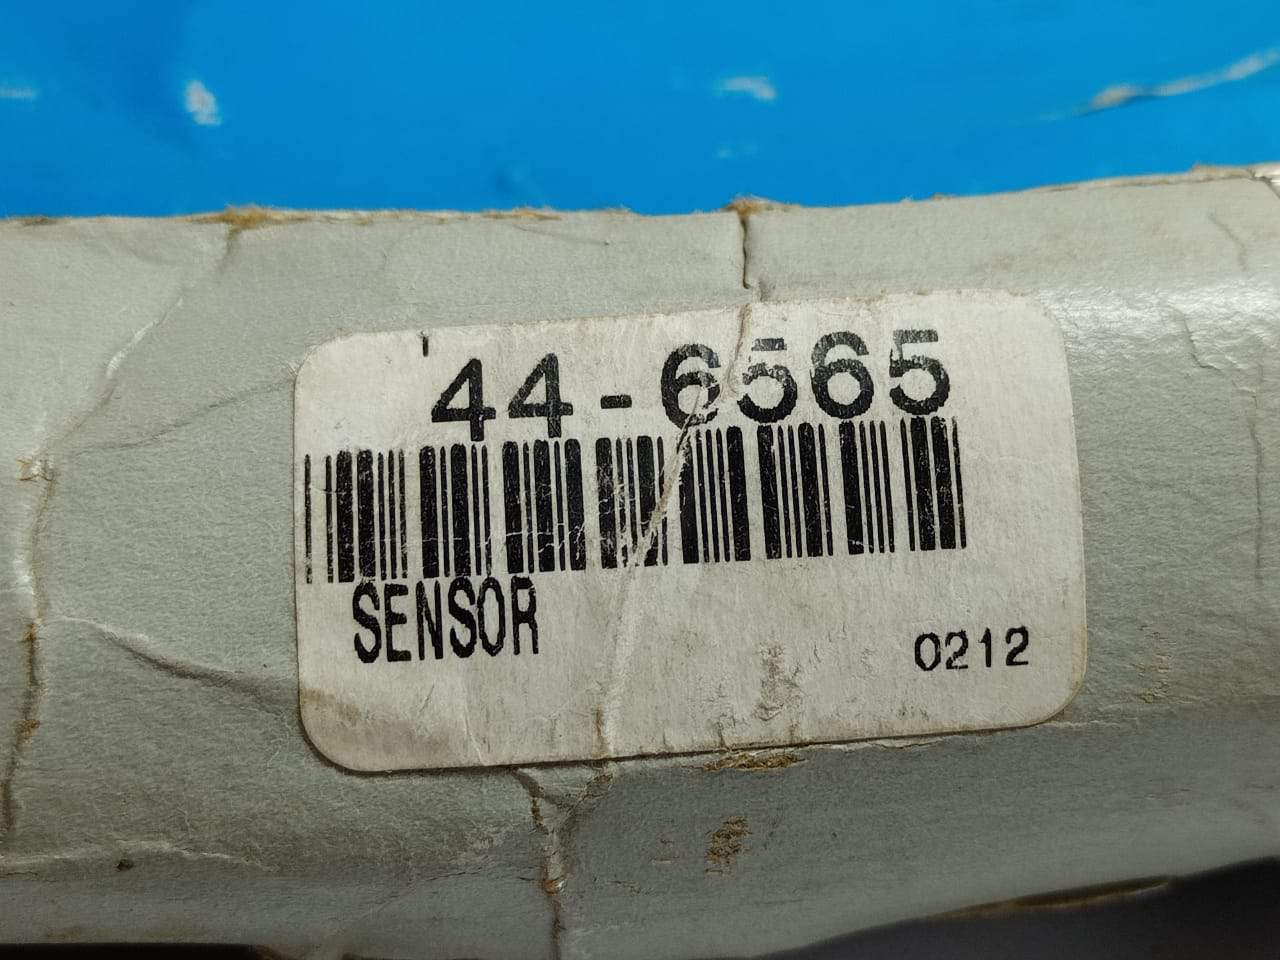 Thermoking 44-6565 Sensor